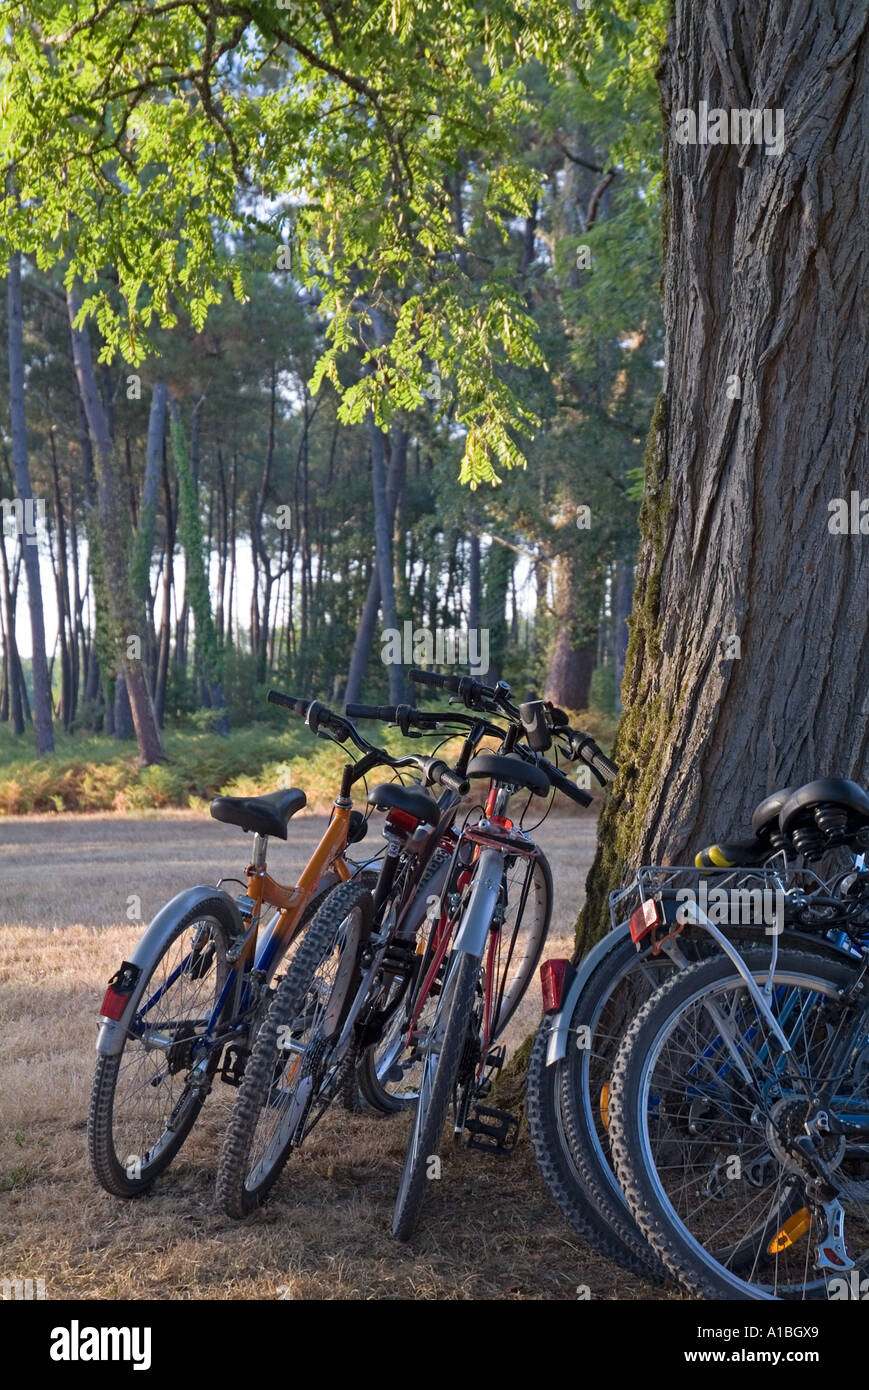 Bicicletas de montaña aparcada apoyado contra el tronco de un árbol. Foto de stock